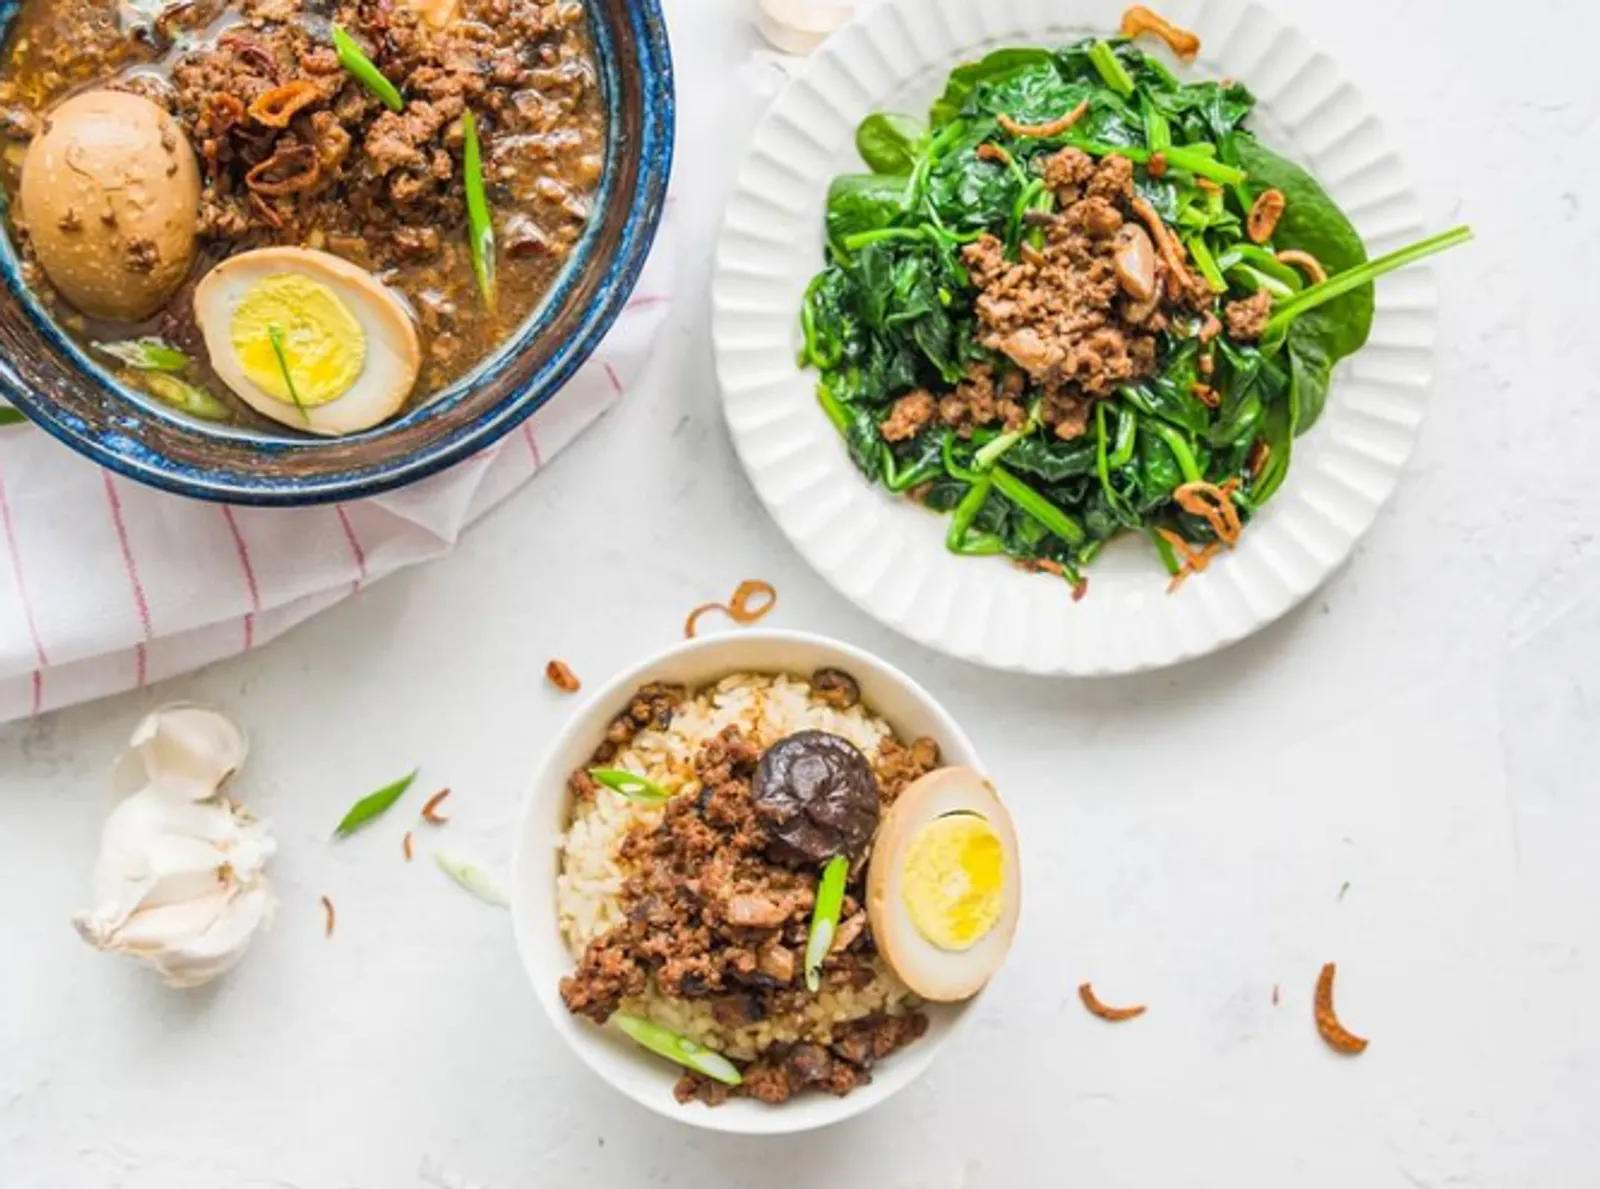 15 Daftar Food Blogger di Instagram untuk Inspirasi Memasak